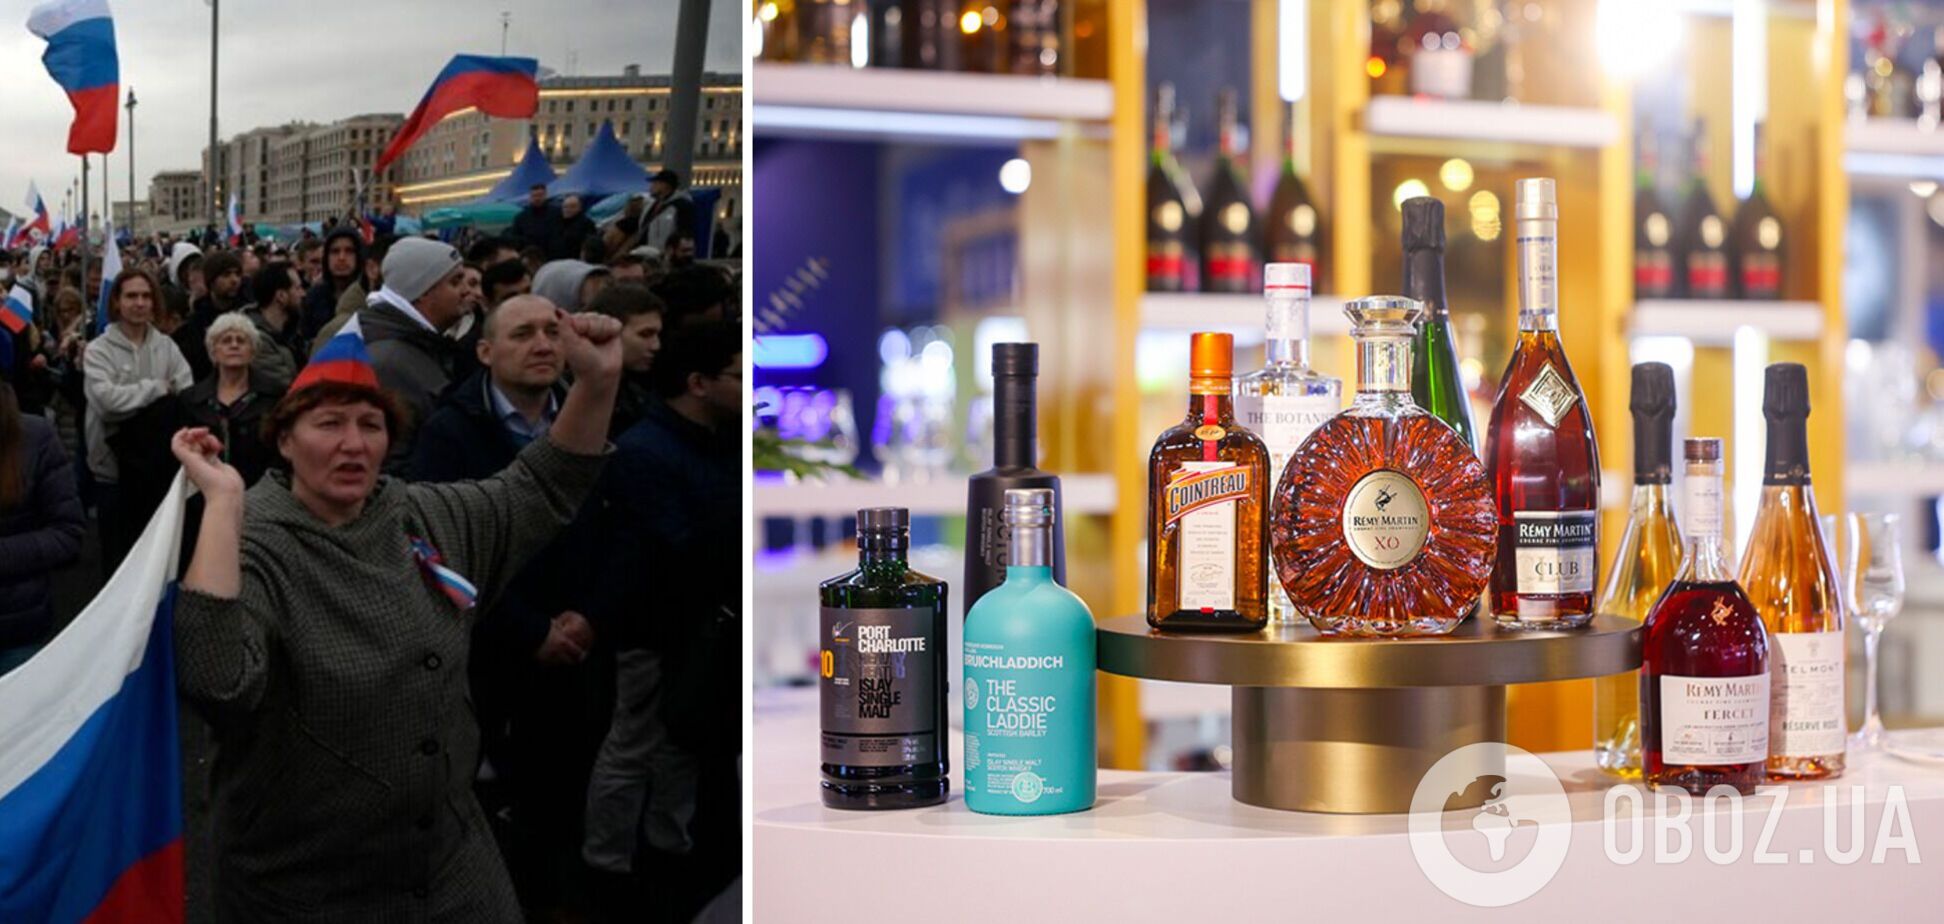 Росіяни продовжують пити західний алкоголь, незважаючи на 'санкції'